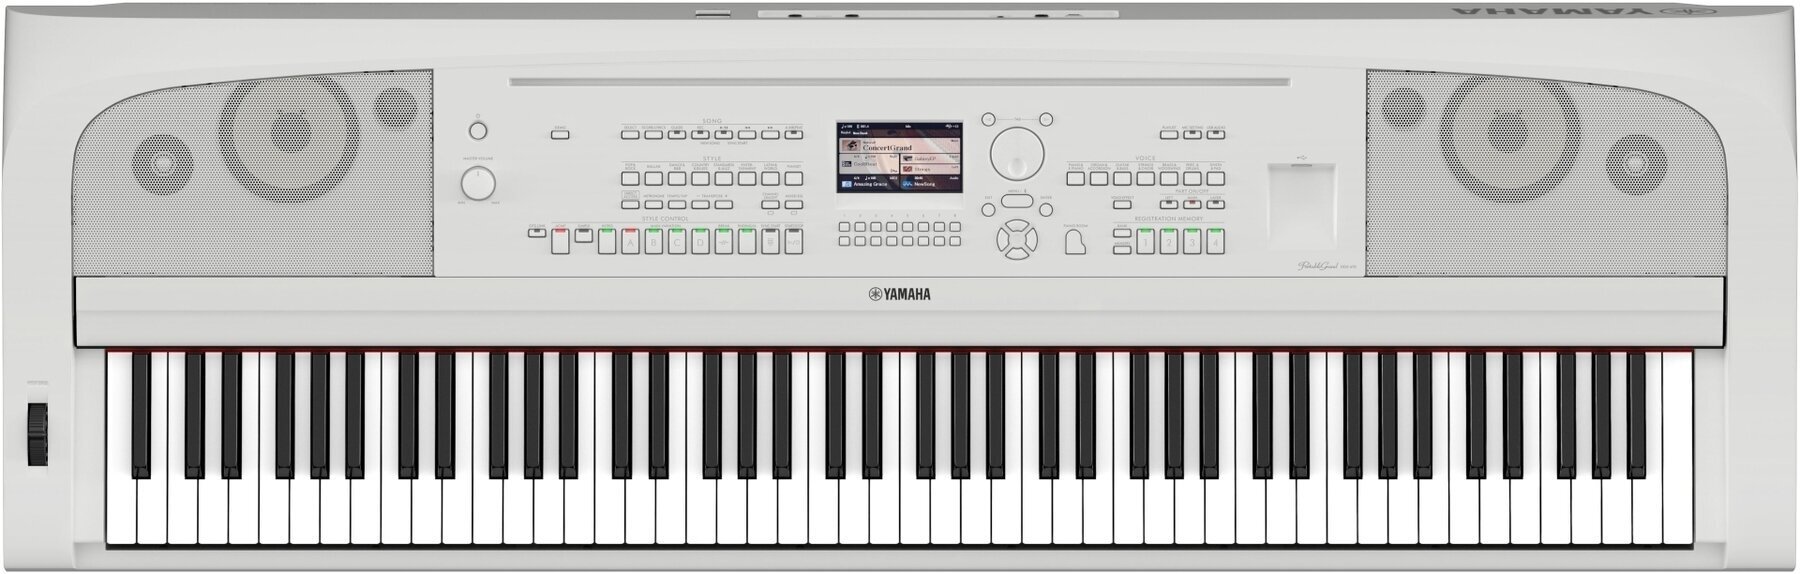 Piano de escenario digital Yamaha DGX 670 Piano de escenario digital